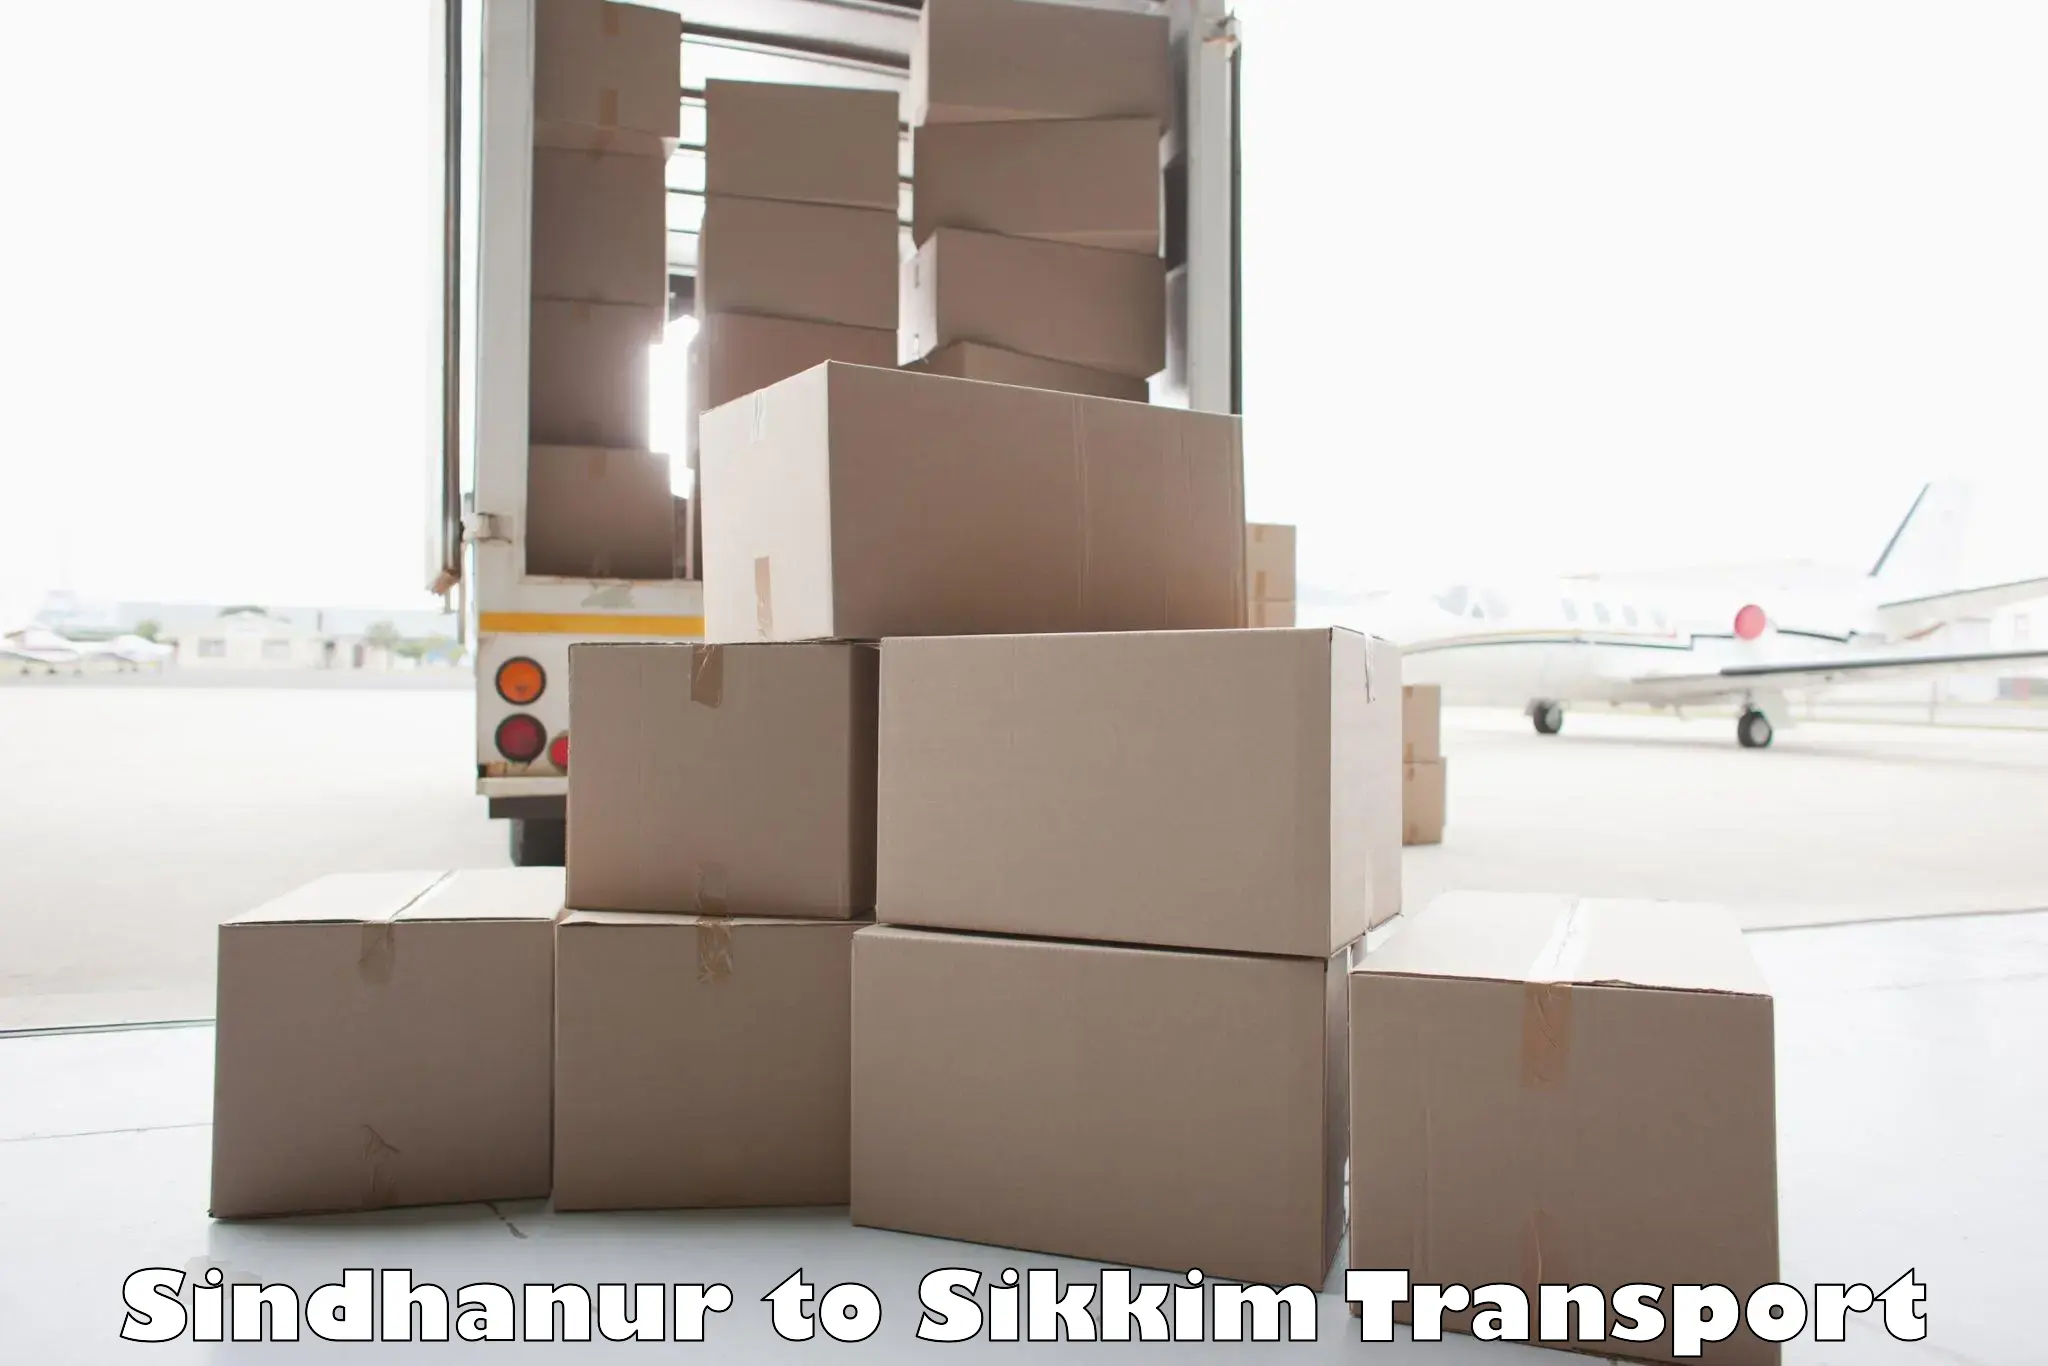 Bike transport service Sindhanur to North Sikkim